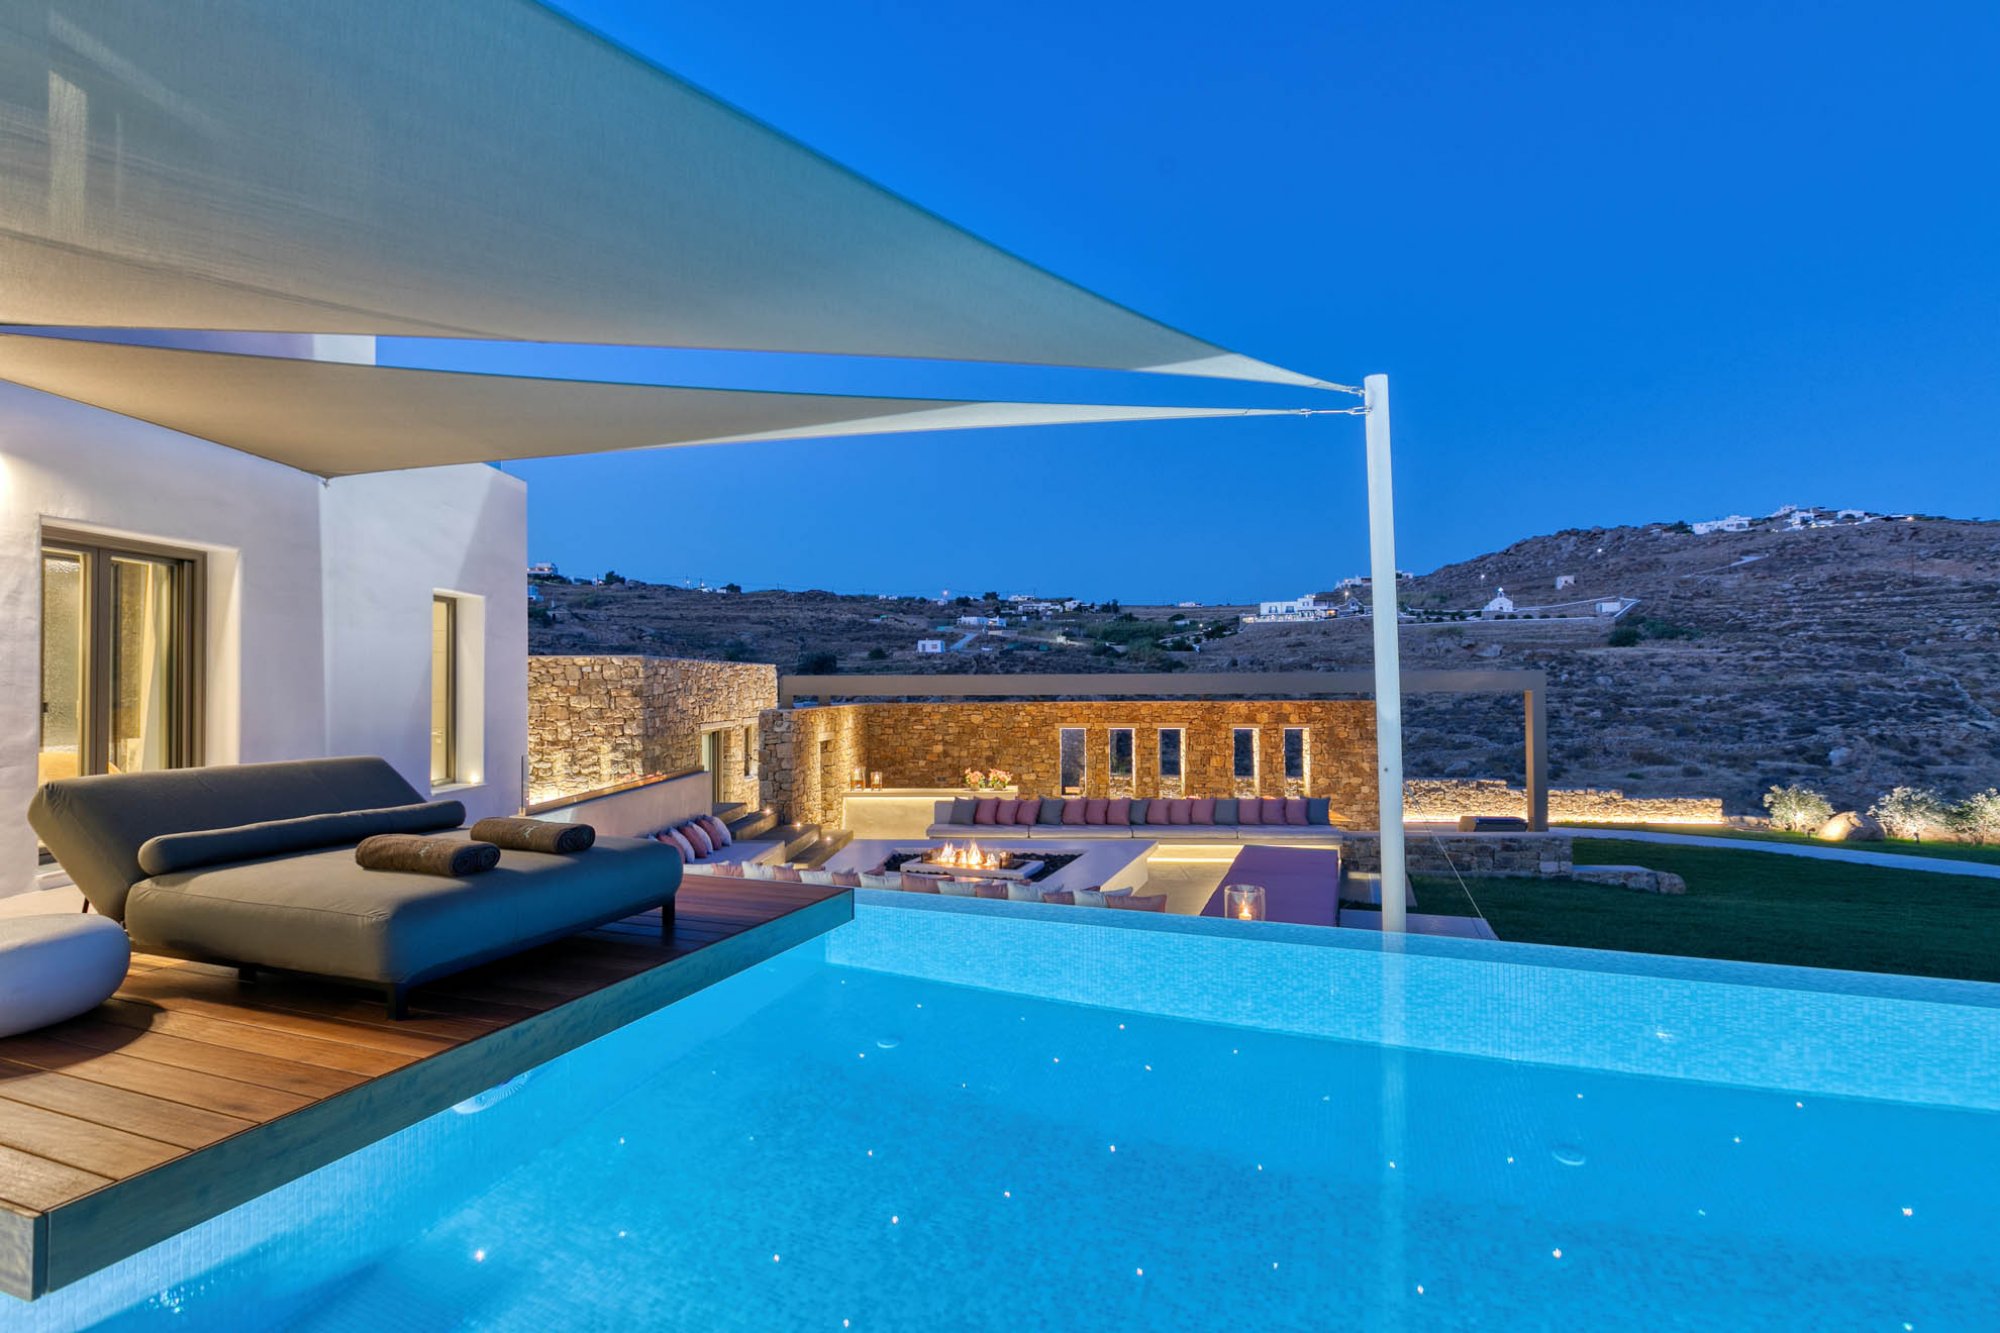 stunning villa with infinity pool overlooking mykonos town